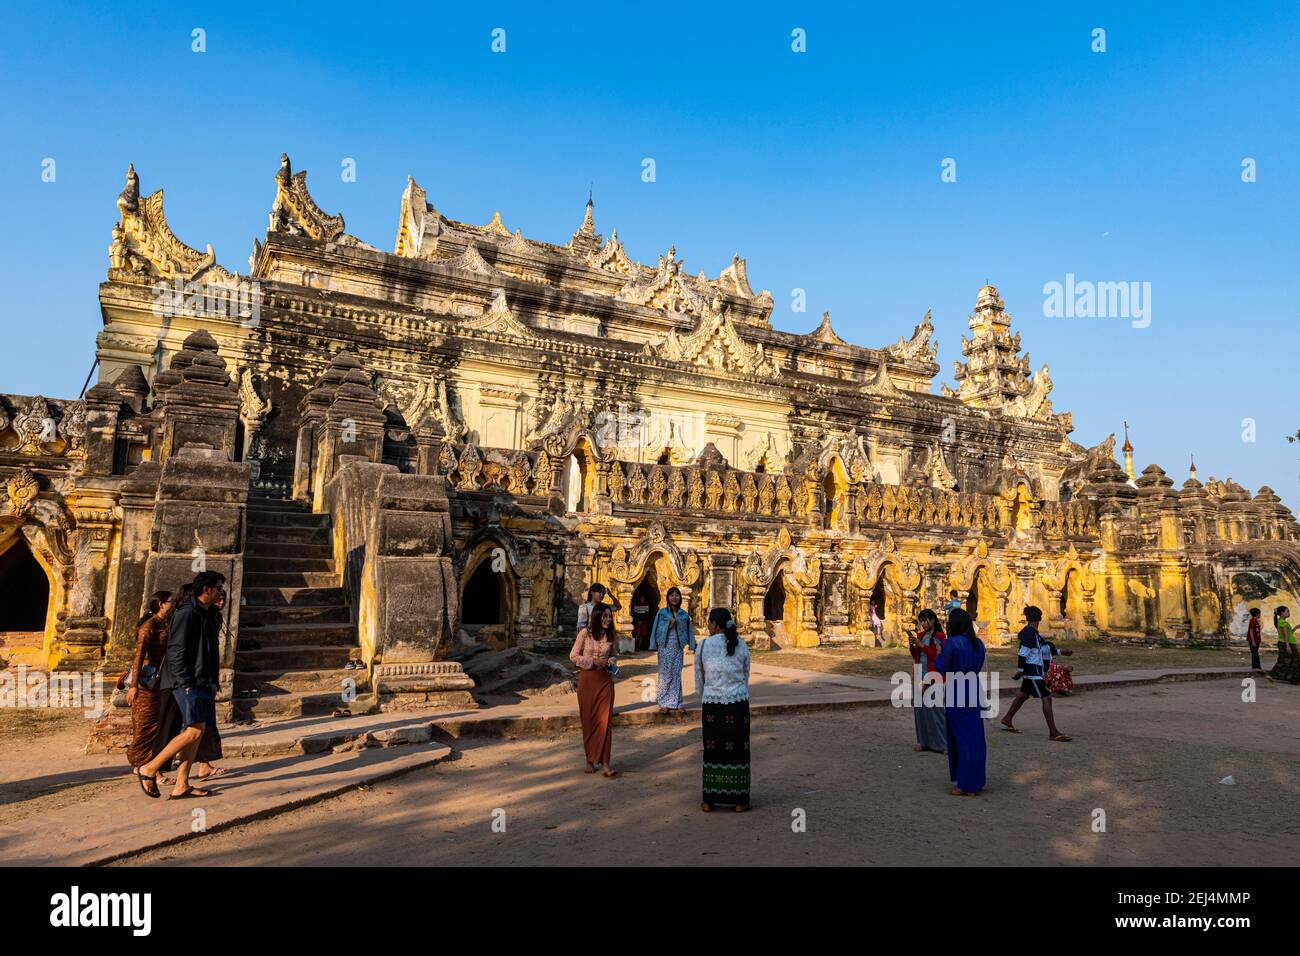 Monastero di Maha Aungmye Bonzan, Inwa o Ava, Mandalay, Myanmar Foto Stock